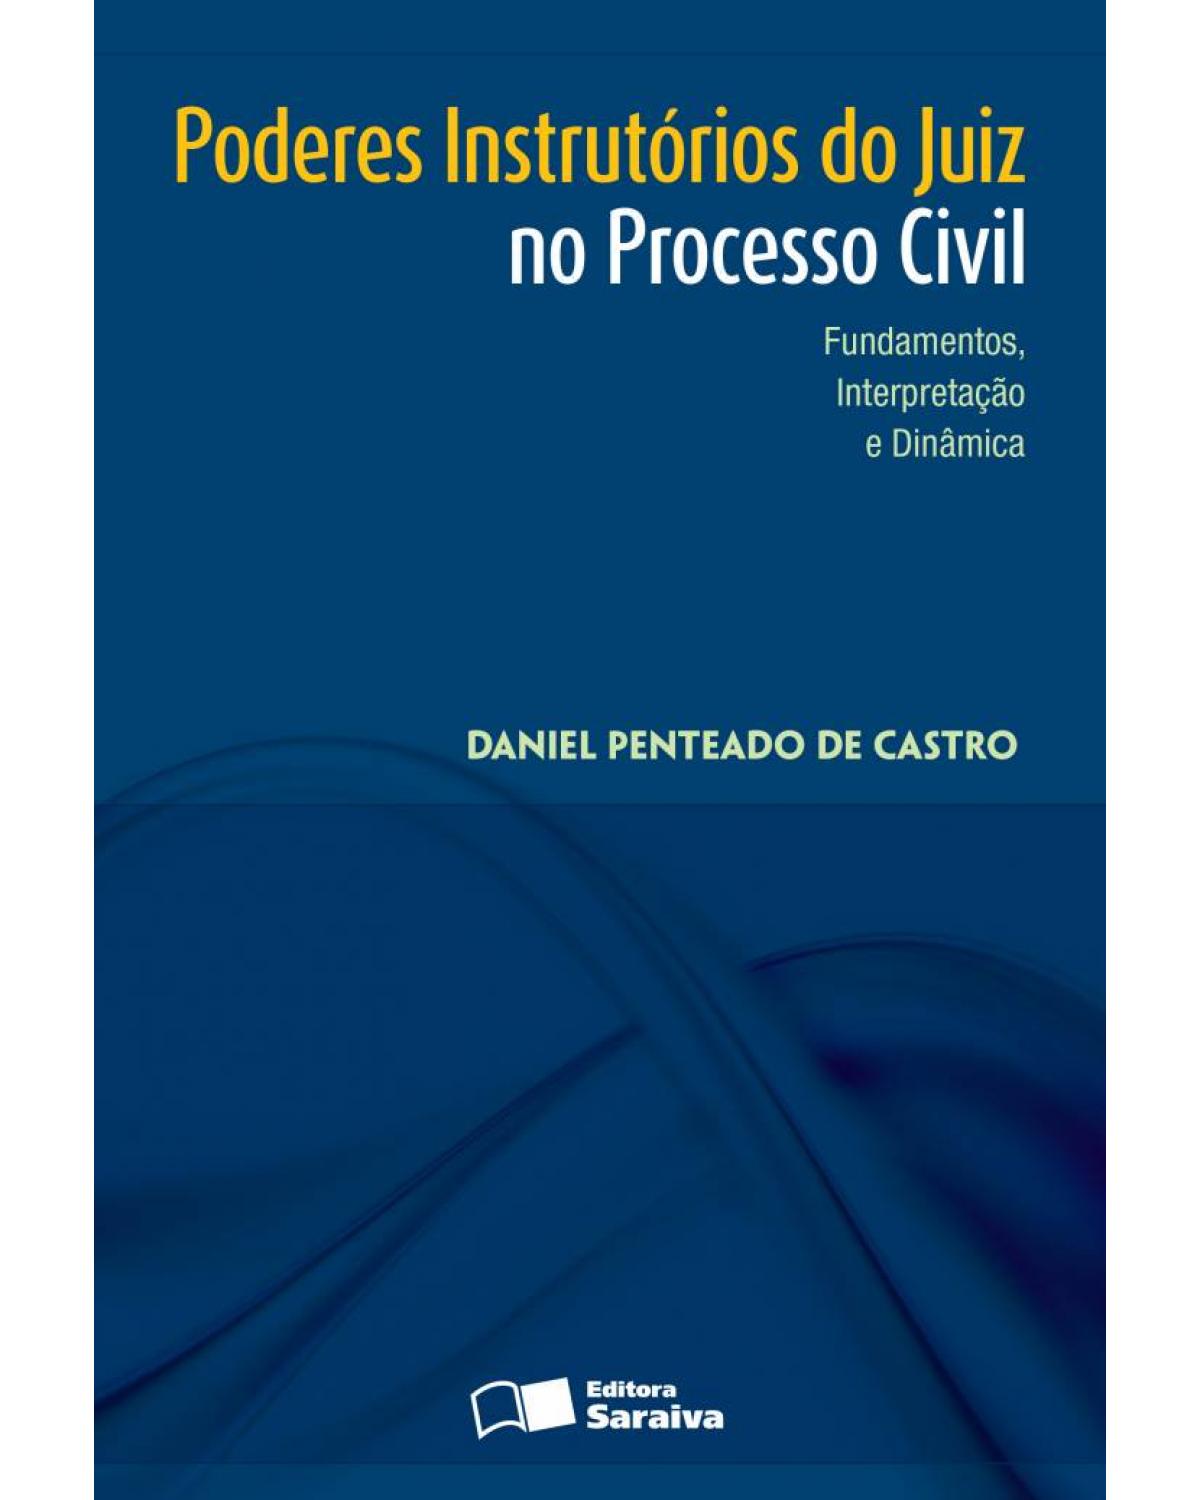 Poderes instrutórios do juiz no processo civil - fundamentos, interpretação e dinâmica - 1ª Edição | 2013